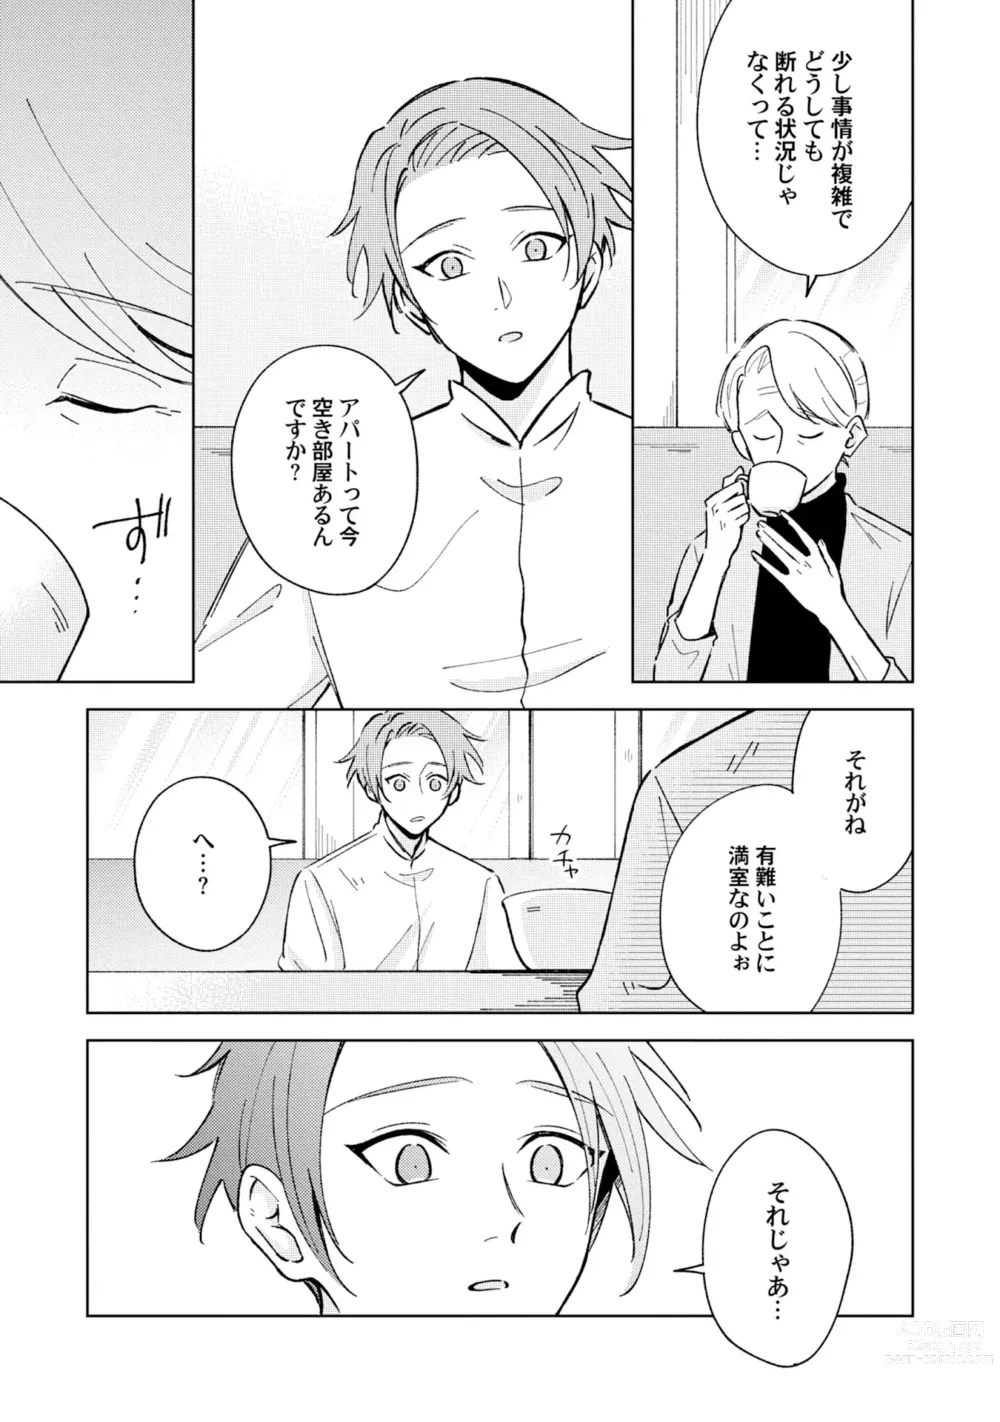 Page 9 of manga Toho 3-byou no Trouble Love Room 4